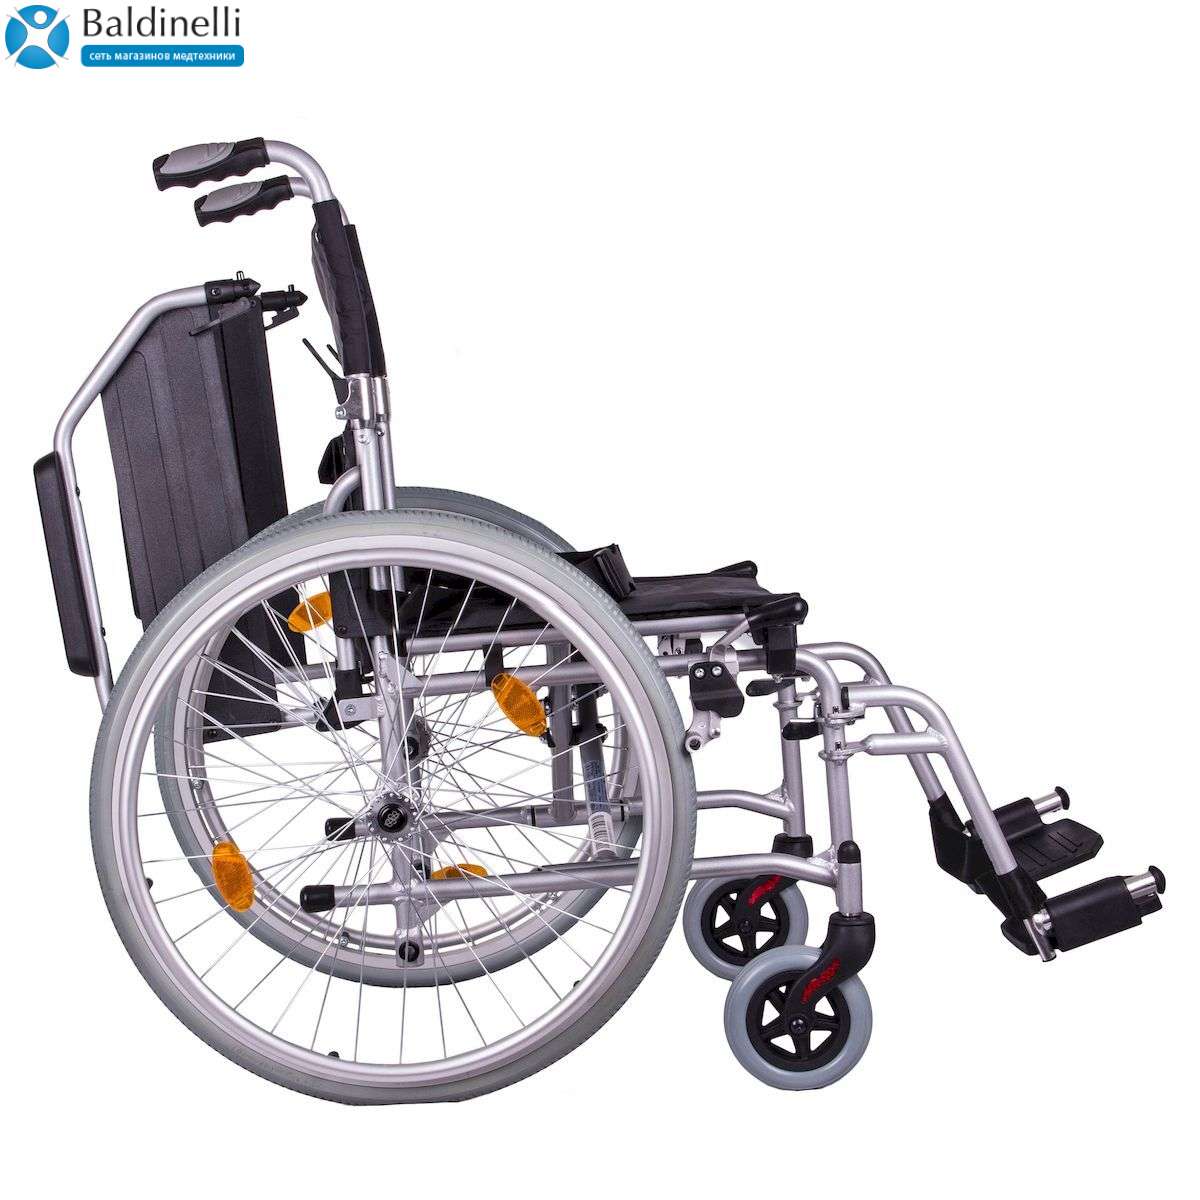 Легкая инвалидная коляска OSD Ergo Light